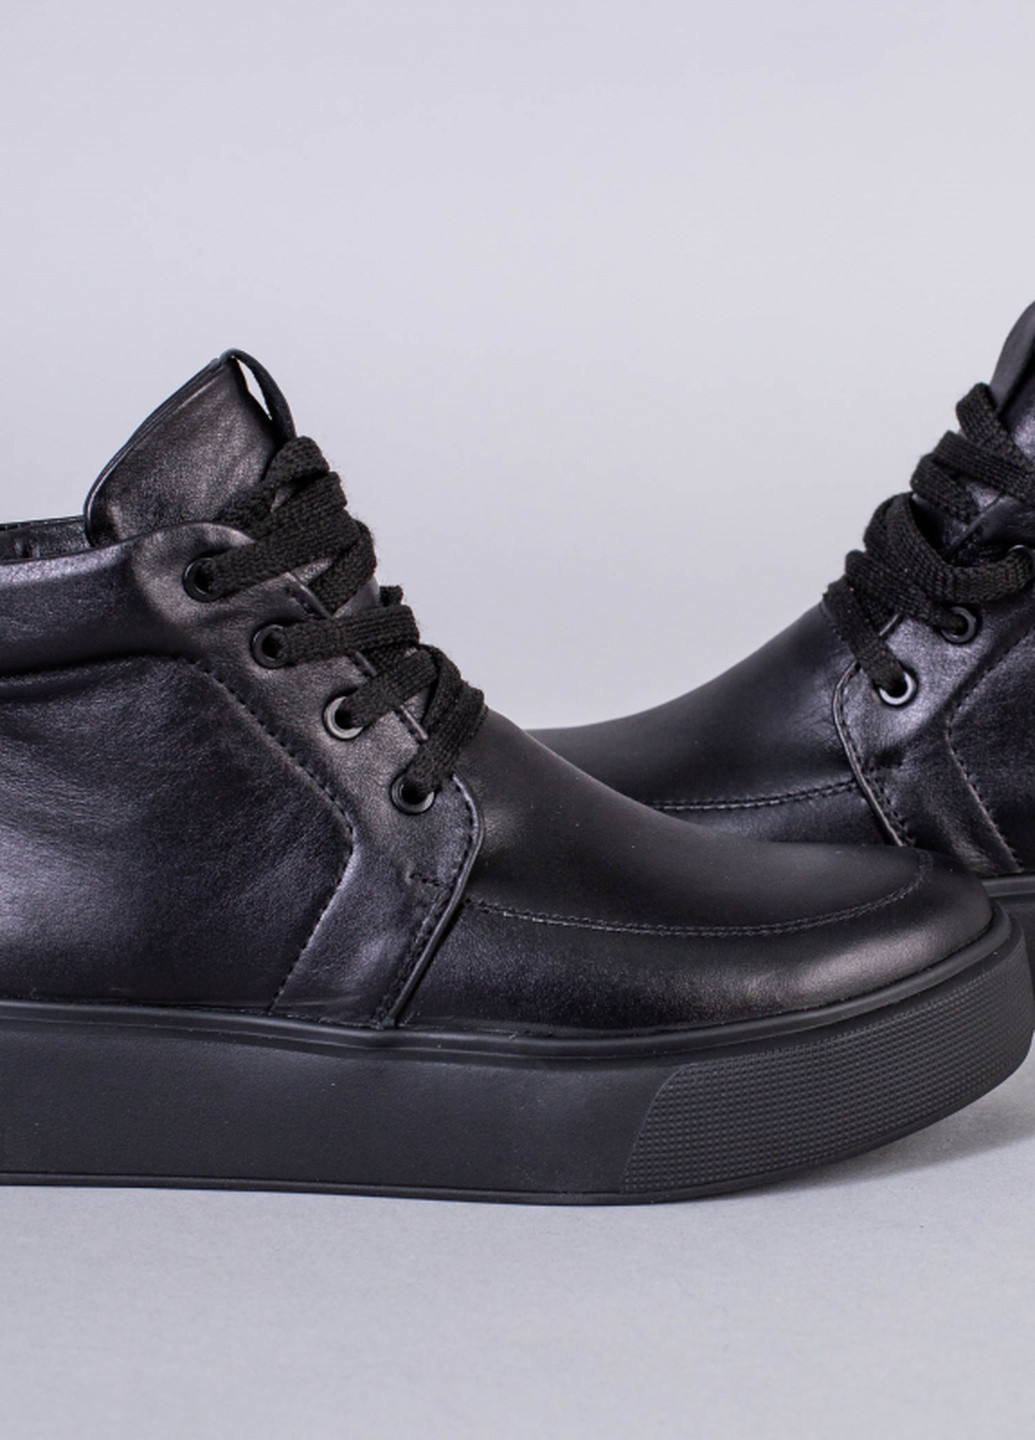 Осенние ботинки shoesband Brand без декора